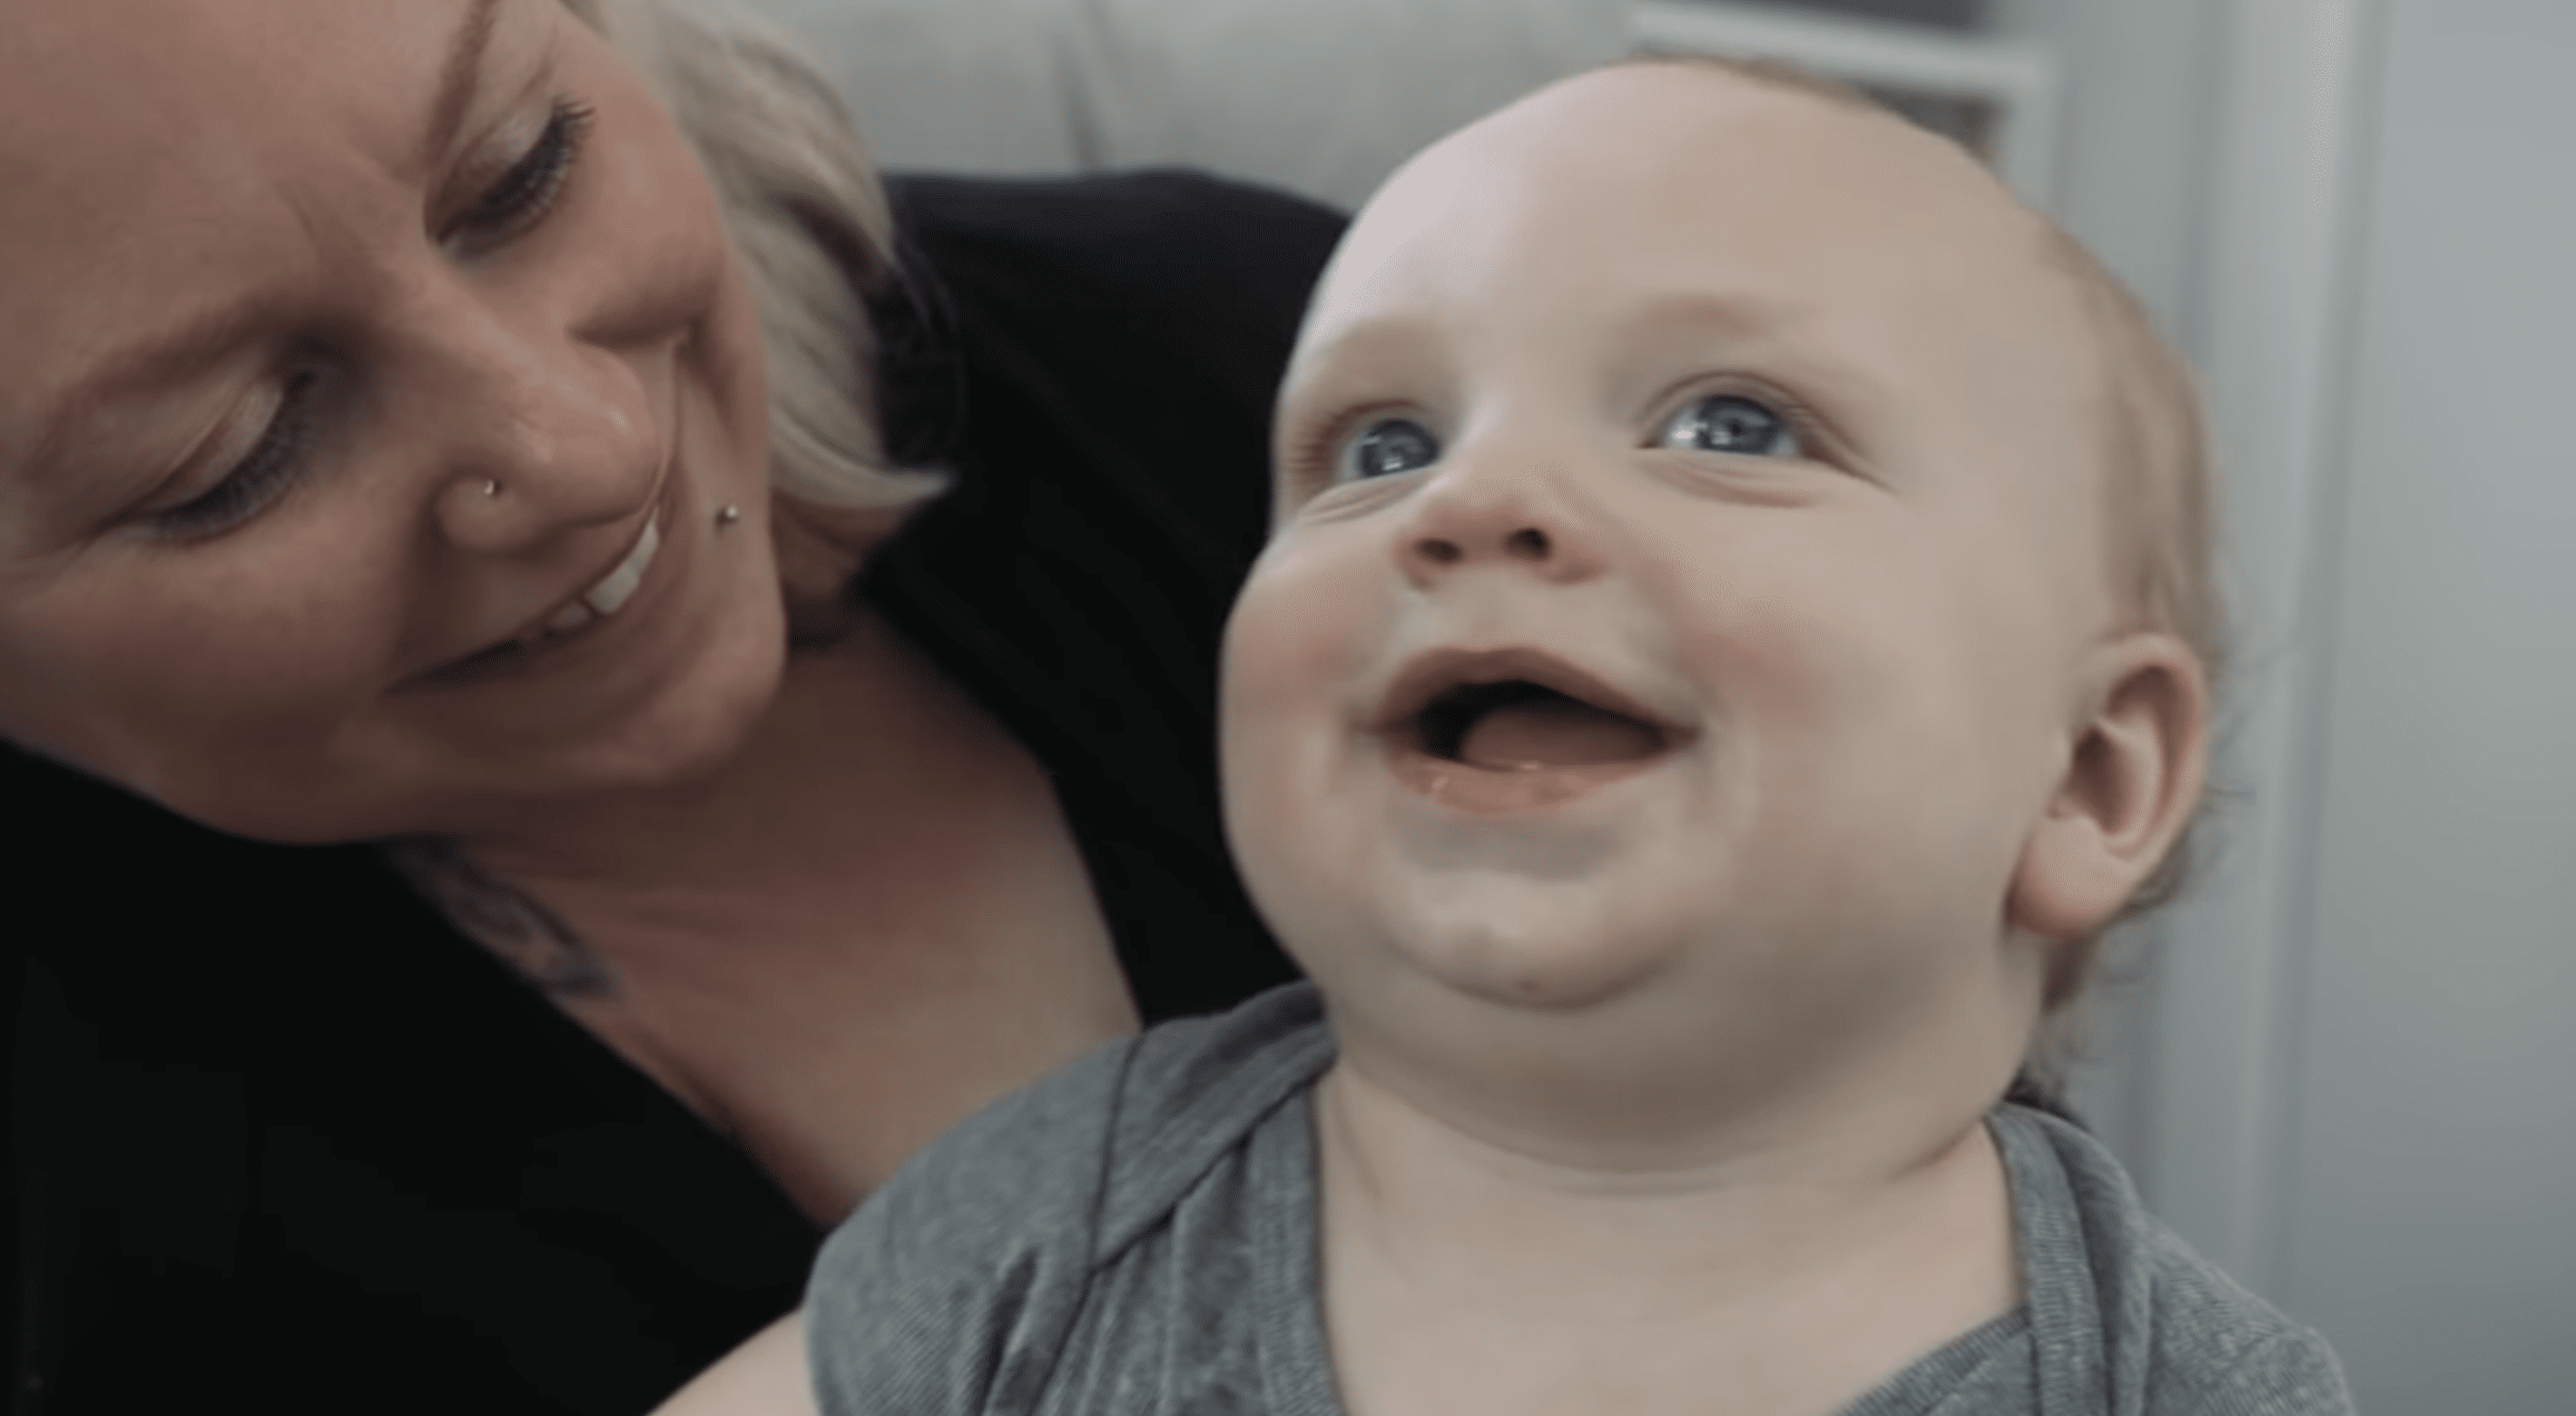 Sigrid mit ihrem kleinen Jungen abgebildet. | Quelle: YouTube/truly